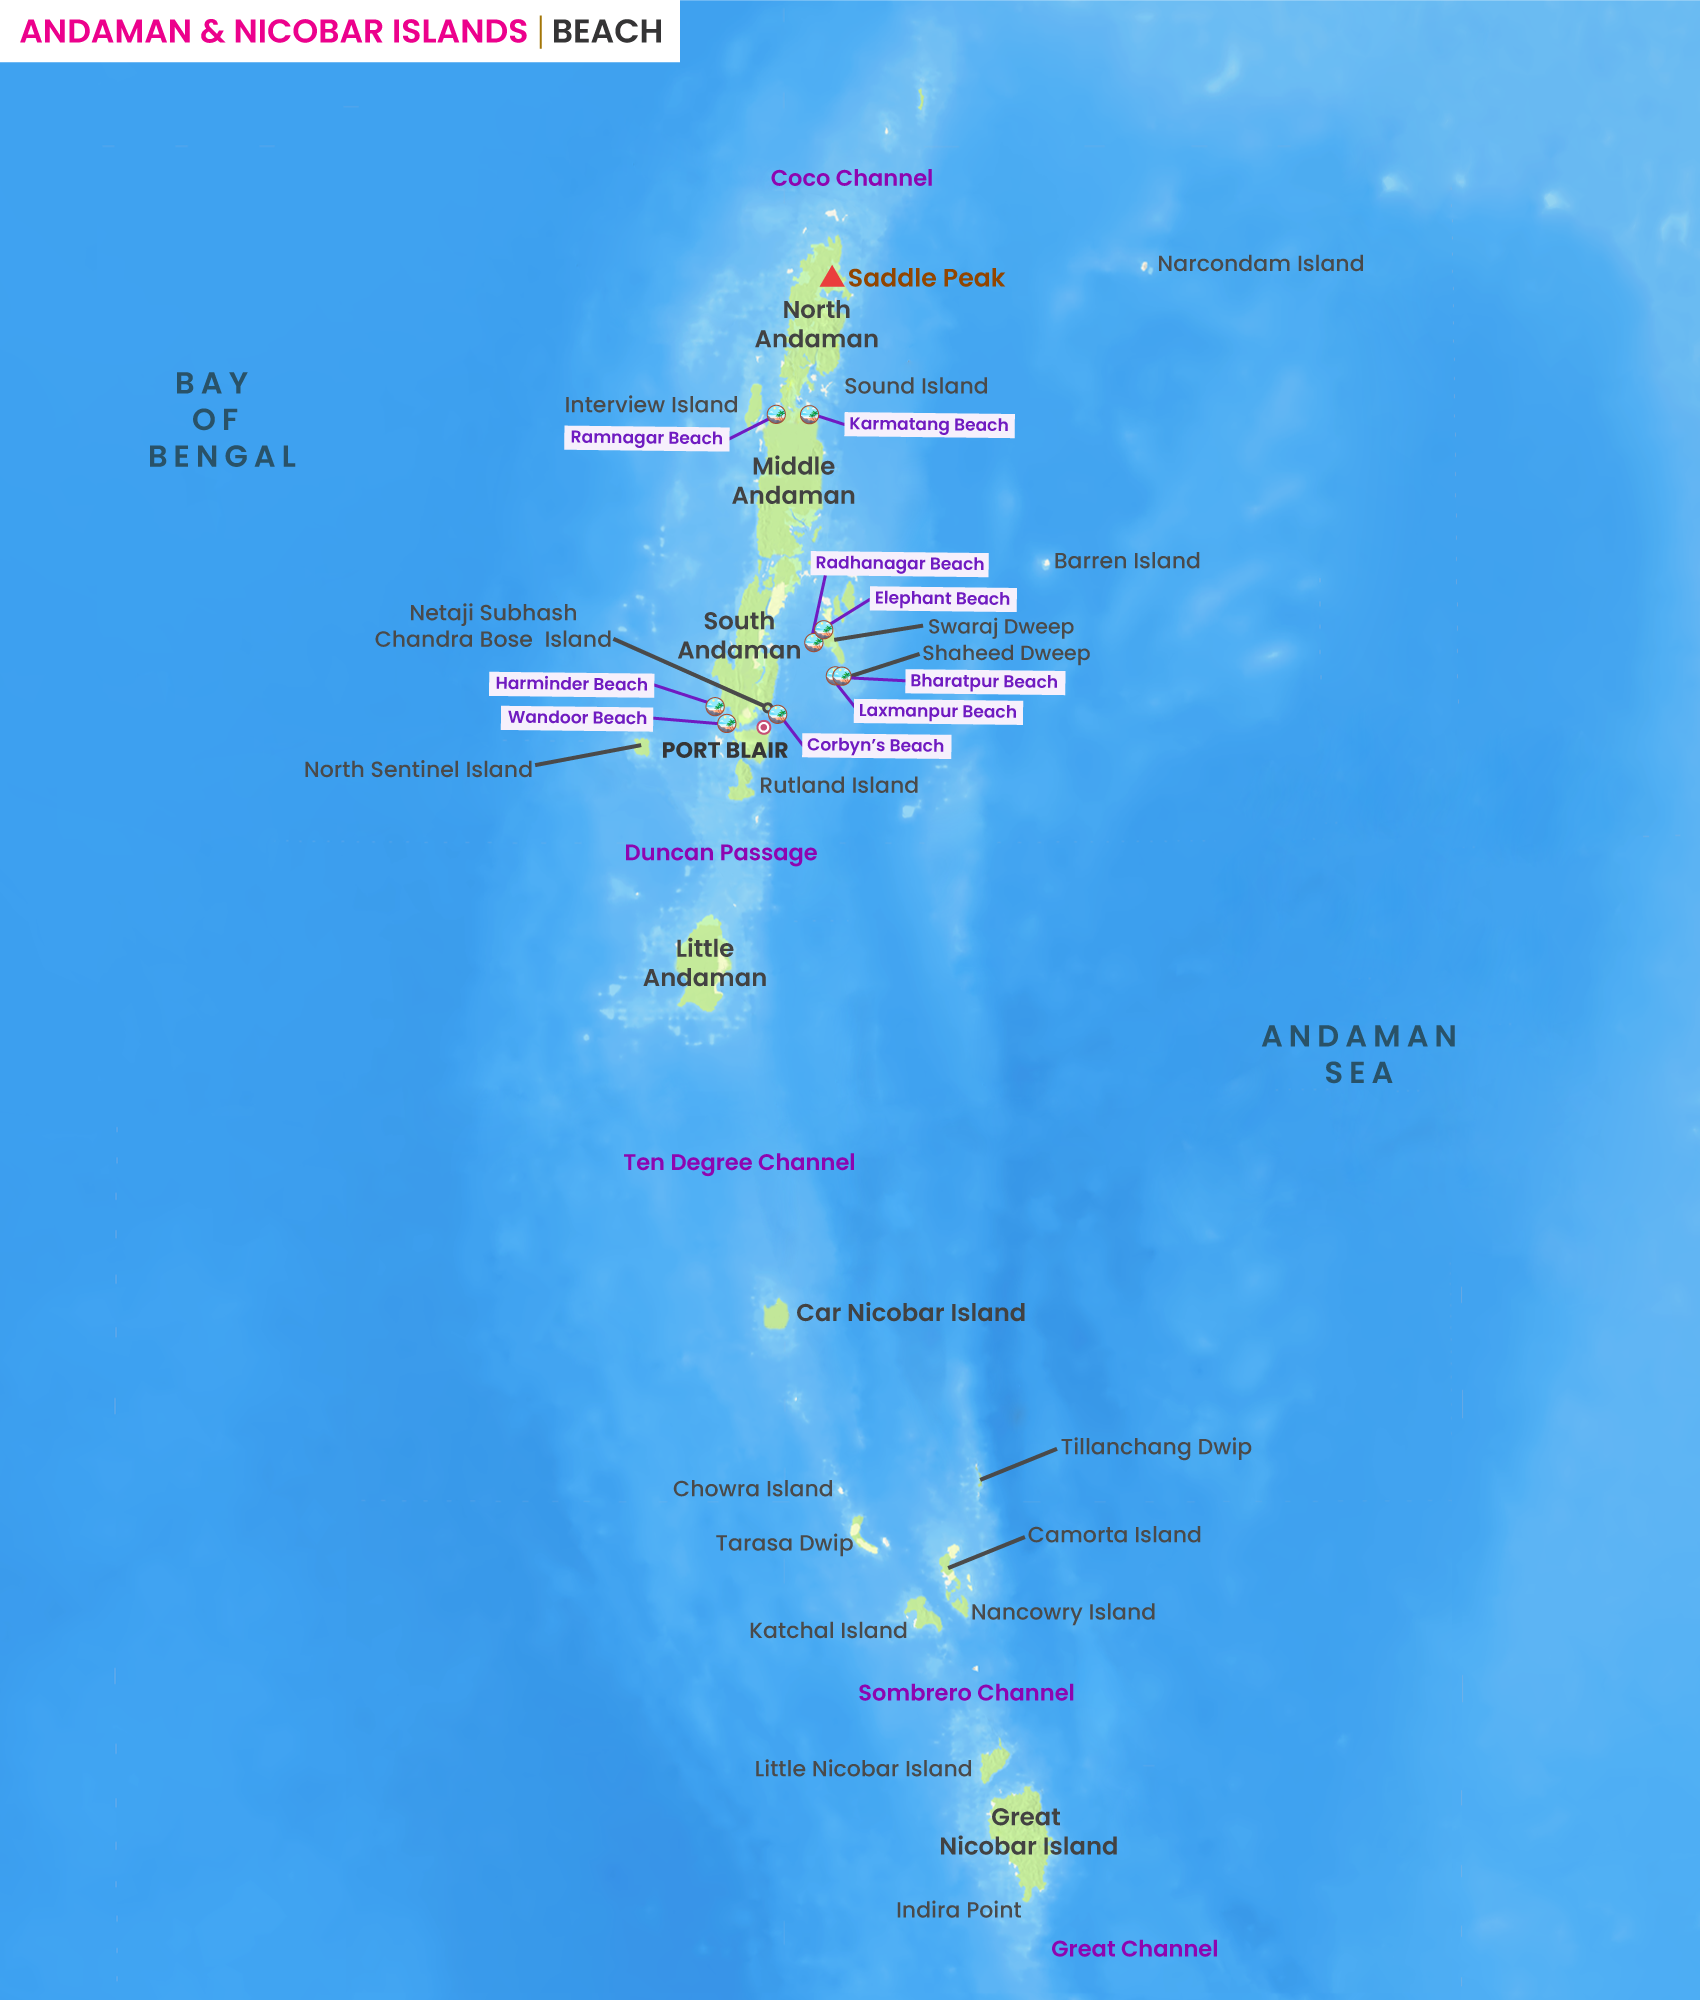 Andaman and Nicobar Islands Beach Map